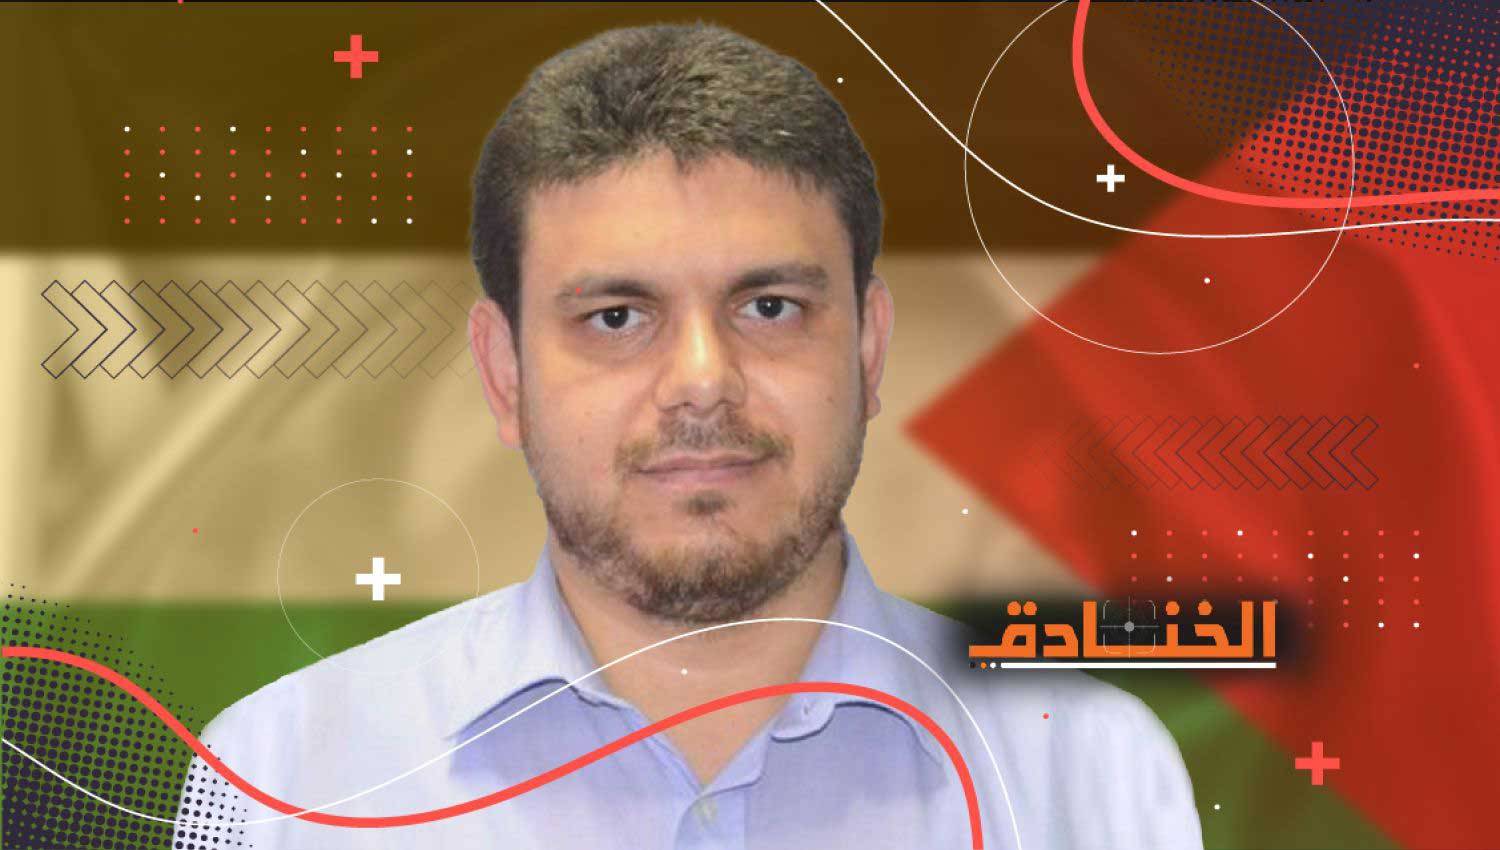 اعتقال قاتل البطش: قدرات استخباراتية متطوّرة للمقاومة في غزّة!